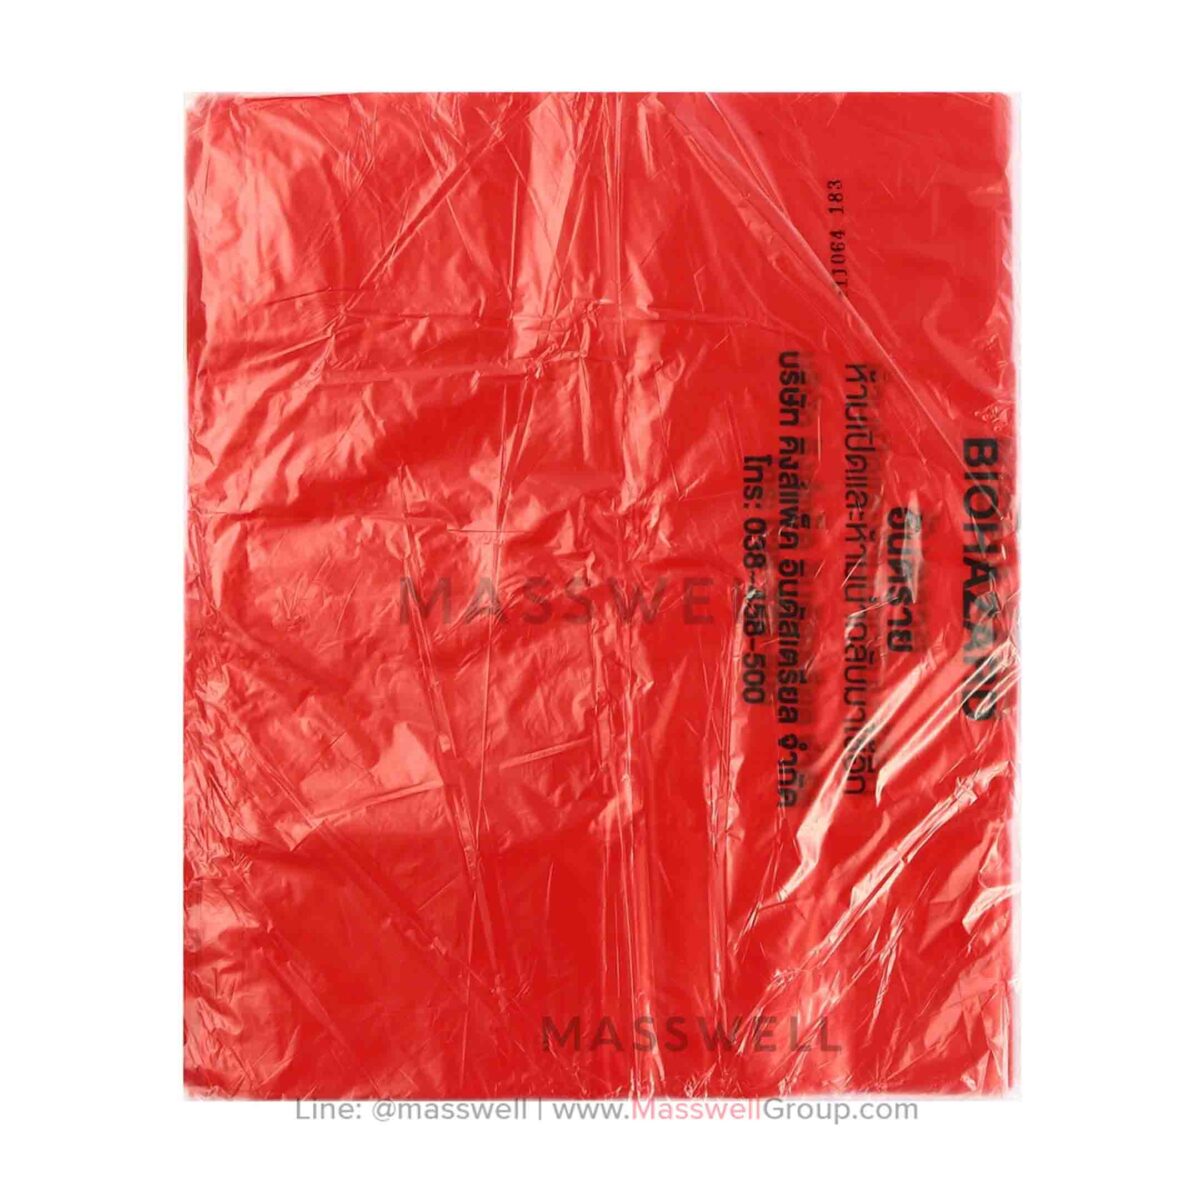 ถุงขยะหนาสีแดง สำหรับขยะติดเชื้อหรือขยะอันตราย หนา 30 ไมครอน ขนาด 24X28 นิ้ว (20ใบ)